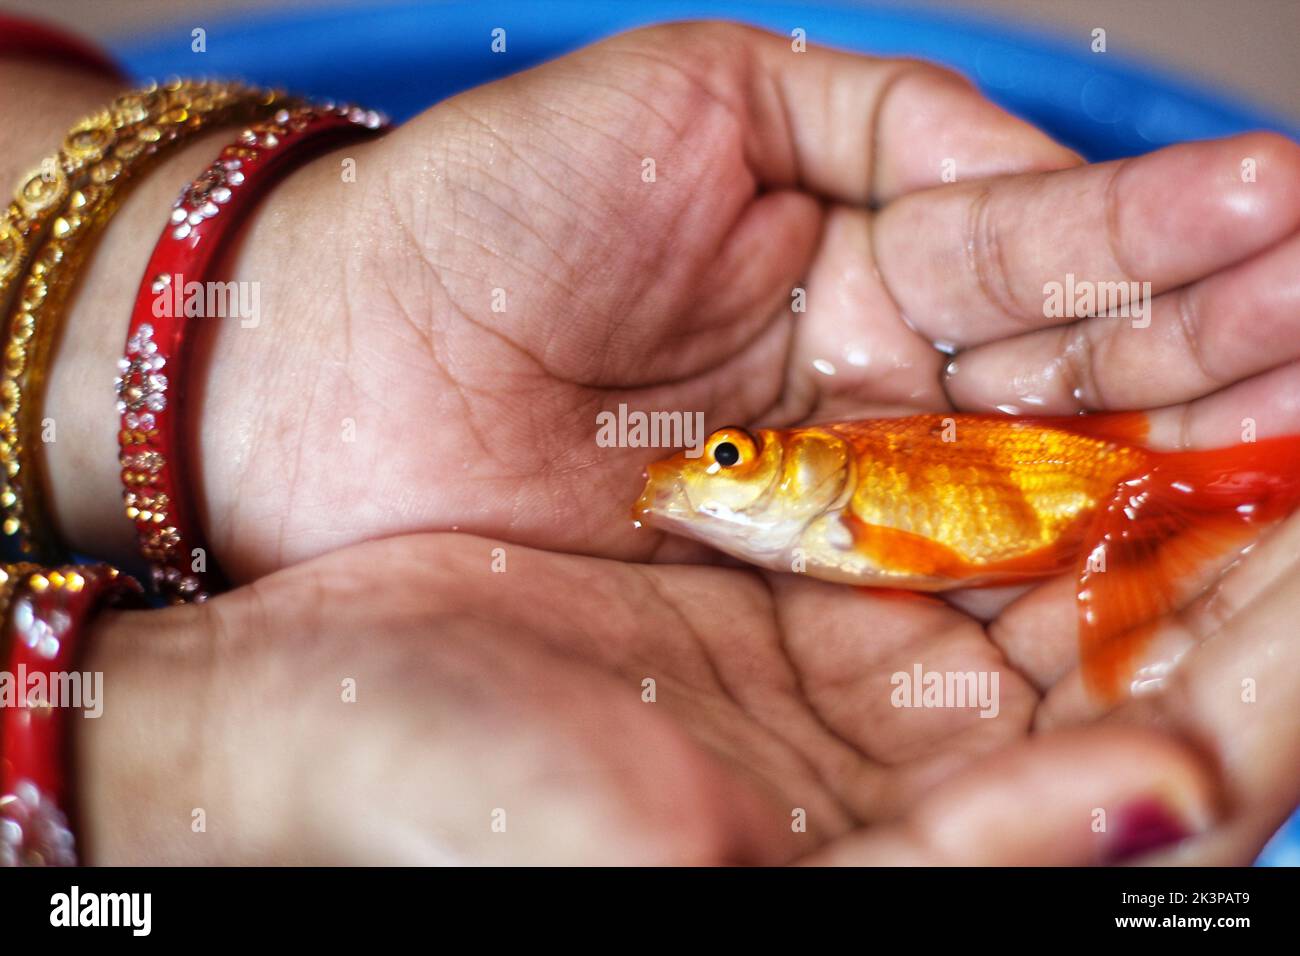 Un gros plan d'un poisson rouge commun dans les mains d'une personne portant des bracelets rouges au-dessus d'un seau d'eau bleu Banque D'Images